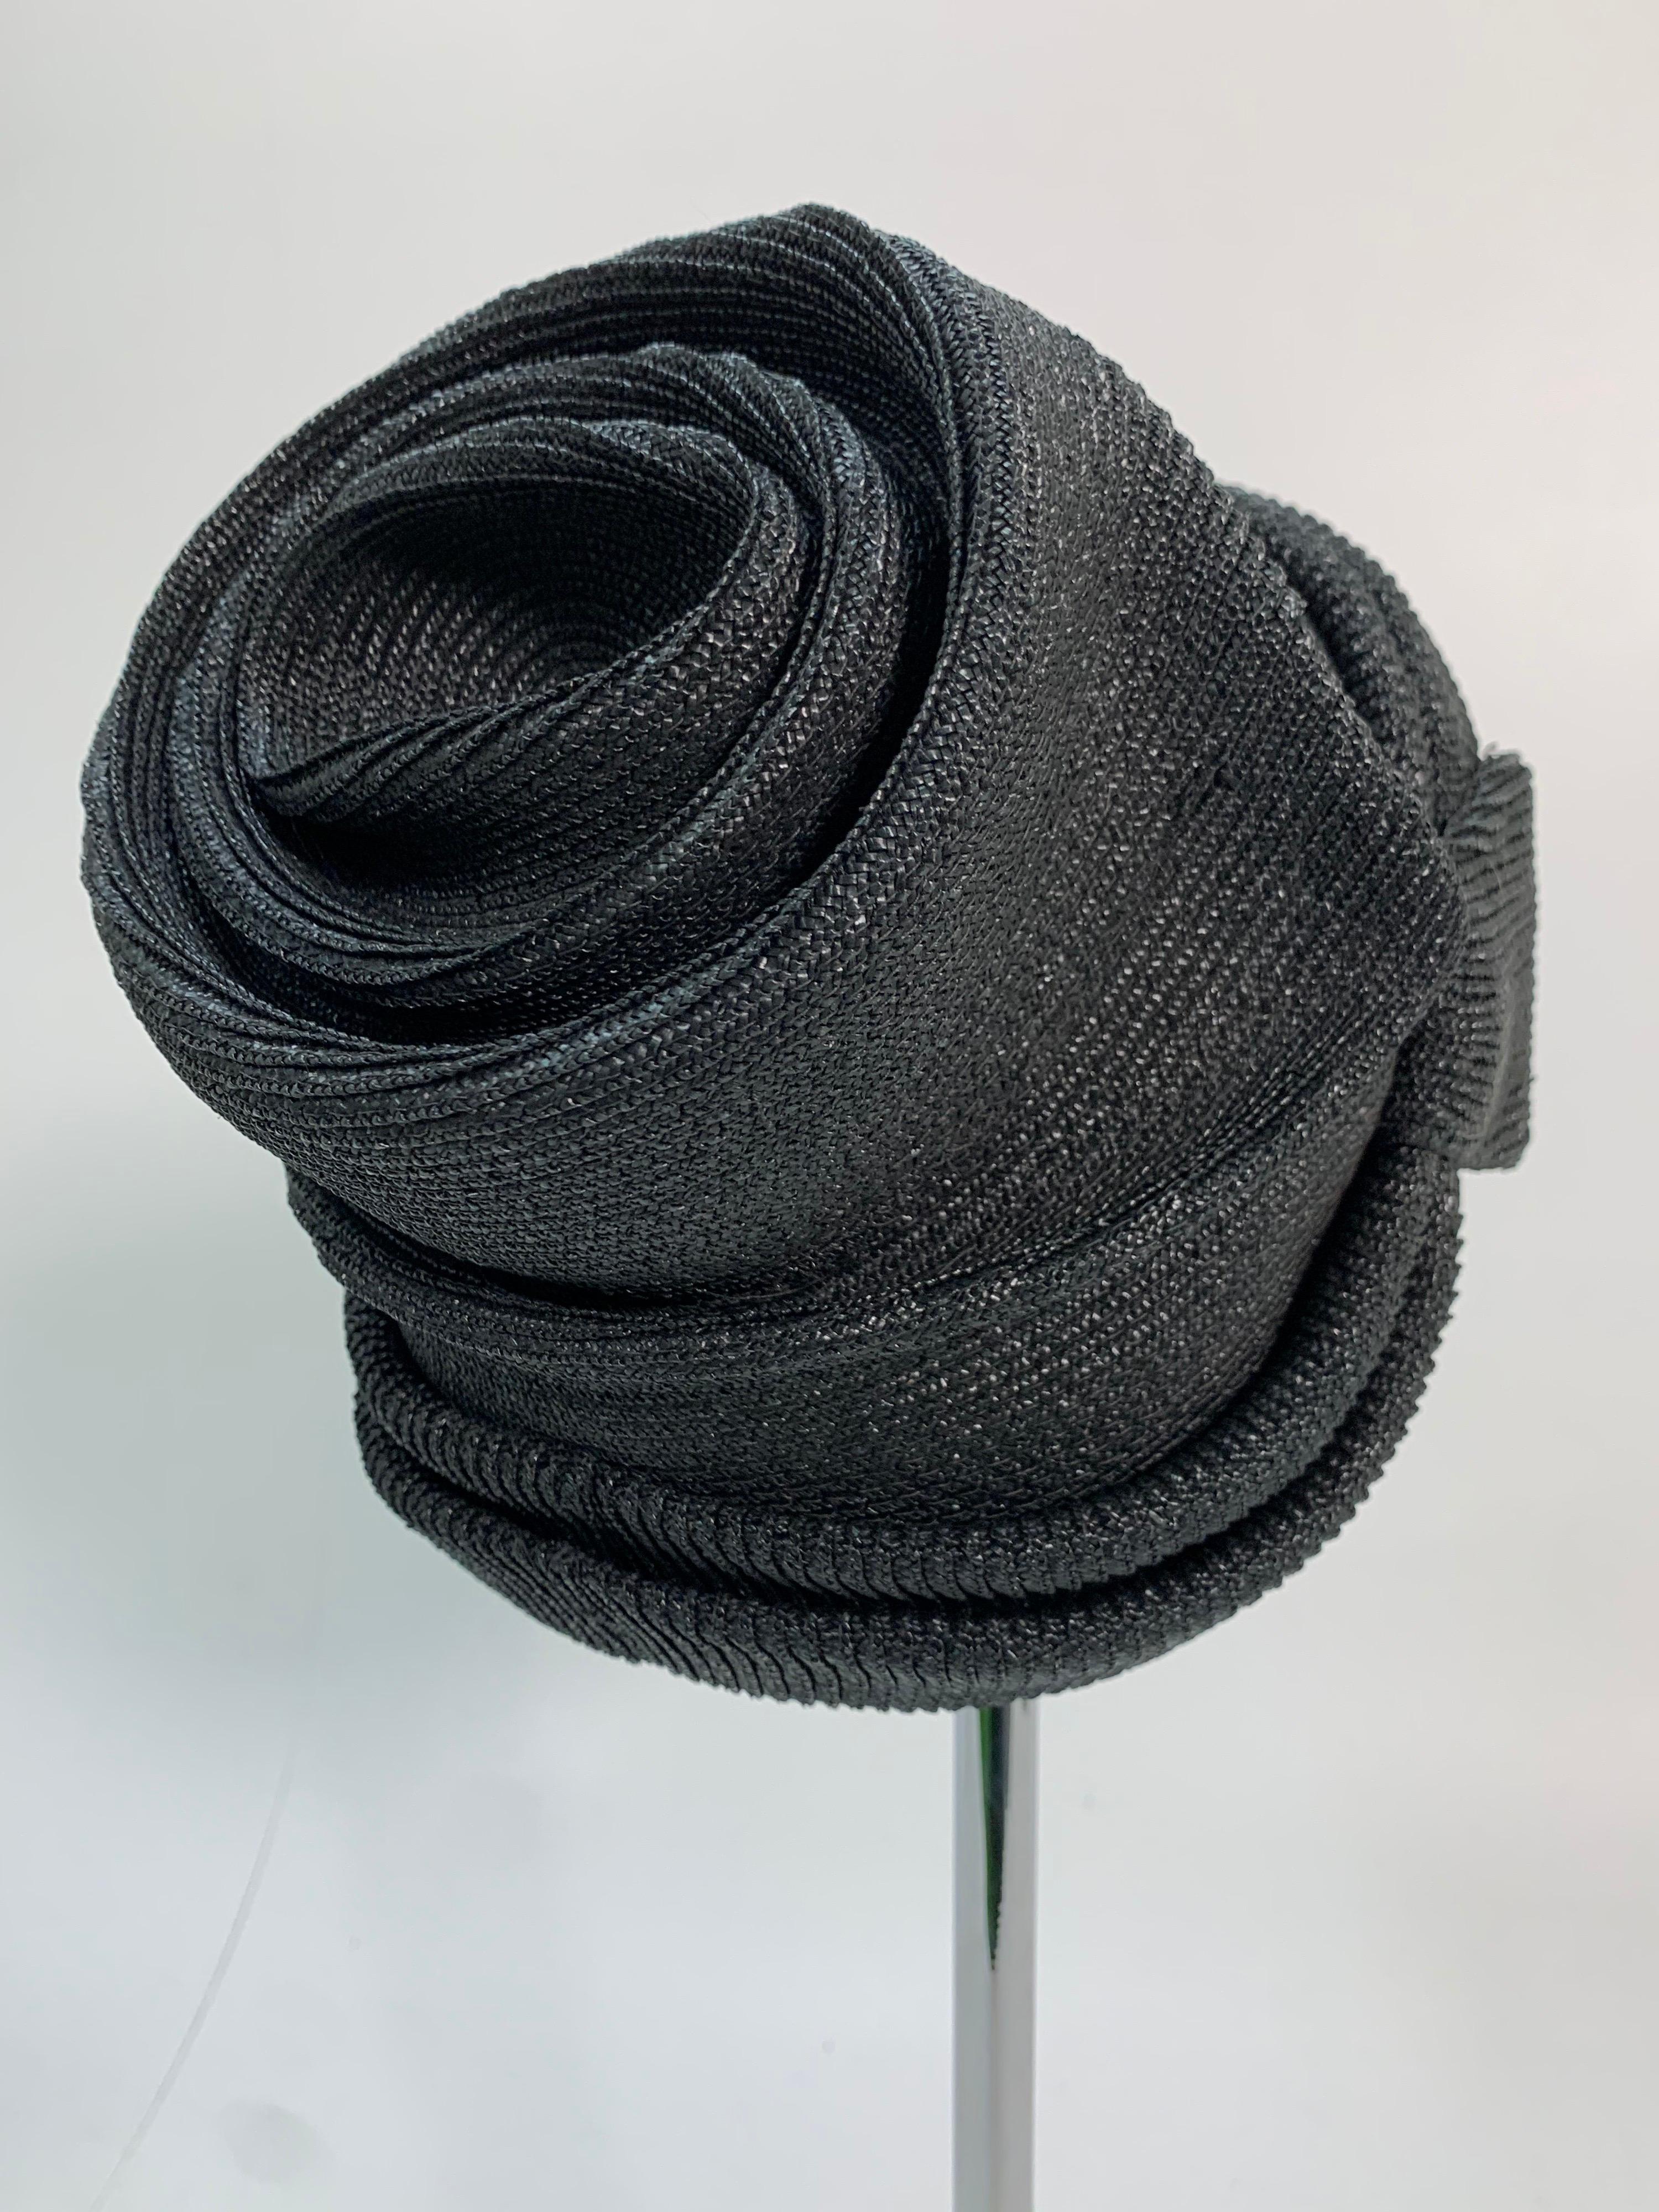 Ein fabelhafter schwarzer Strohhut von John Frederics aus den 1950er Jahren mit Rüschen und Drapierungen im Stil der Avantgarde und des Sunset Boulevards!  Eine wirklich einzigartige Stilaussage! Die Frisur wird am Scheitel mit sichtbarem Haaransatz